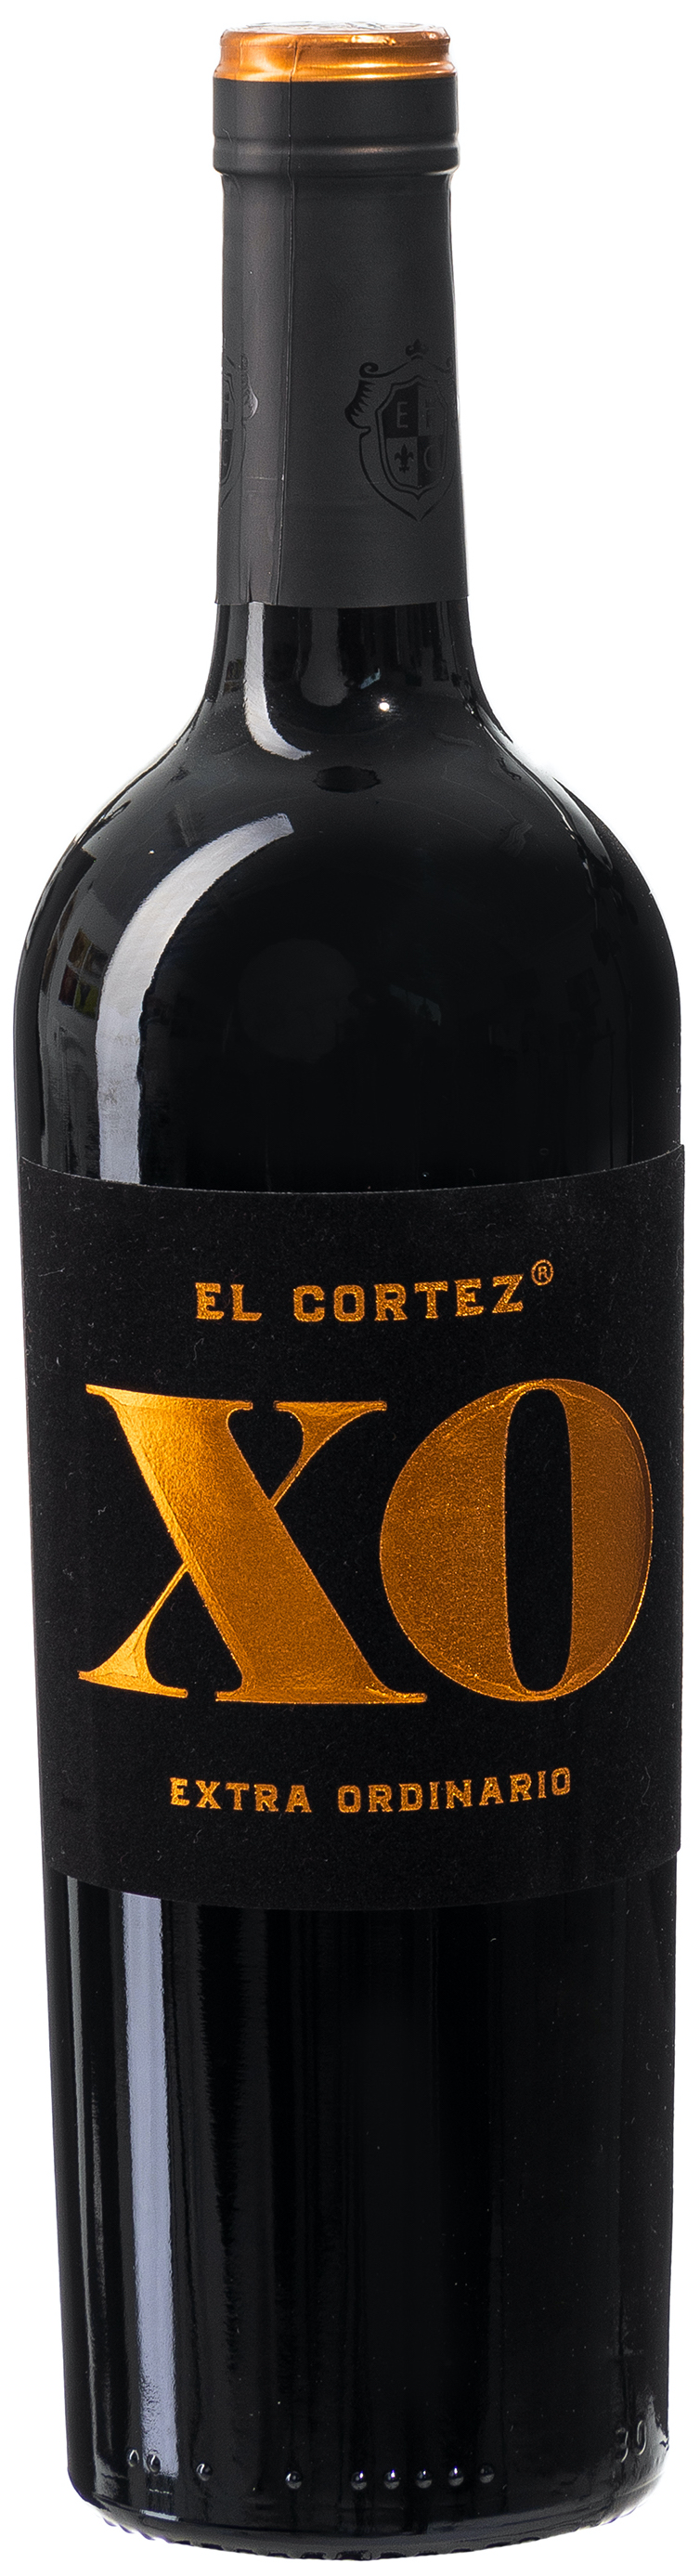 El Cortez XO Ectra Ordinario halbtrocken 14% vol. 0,75L